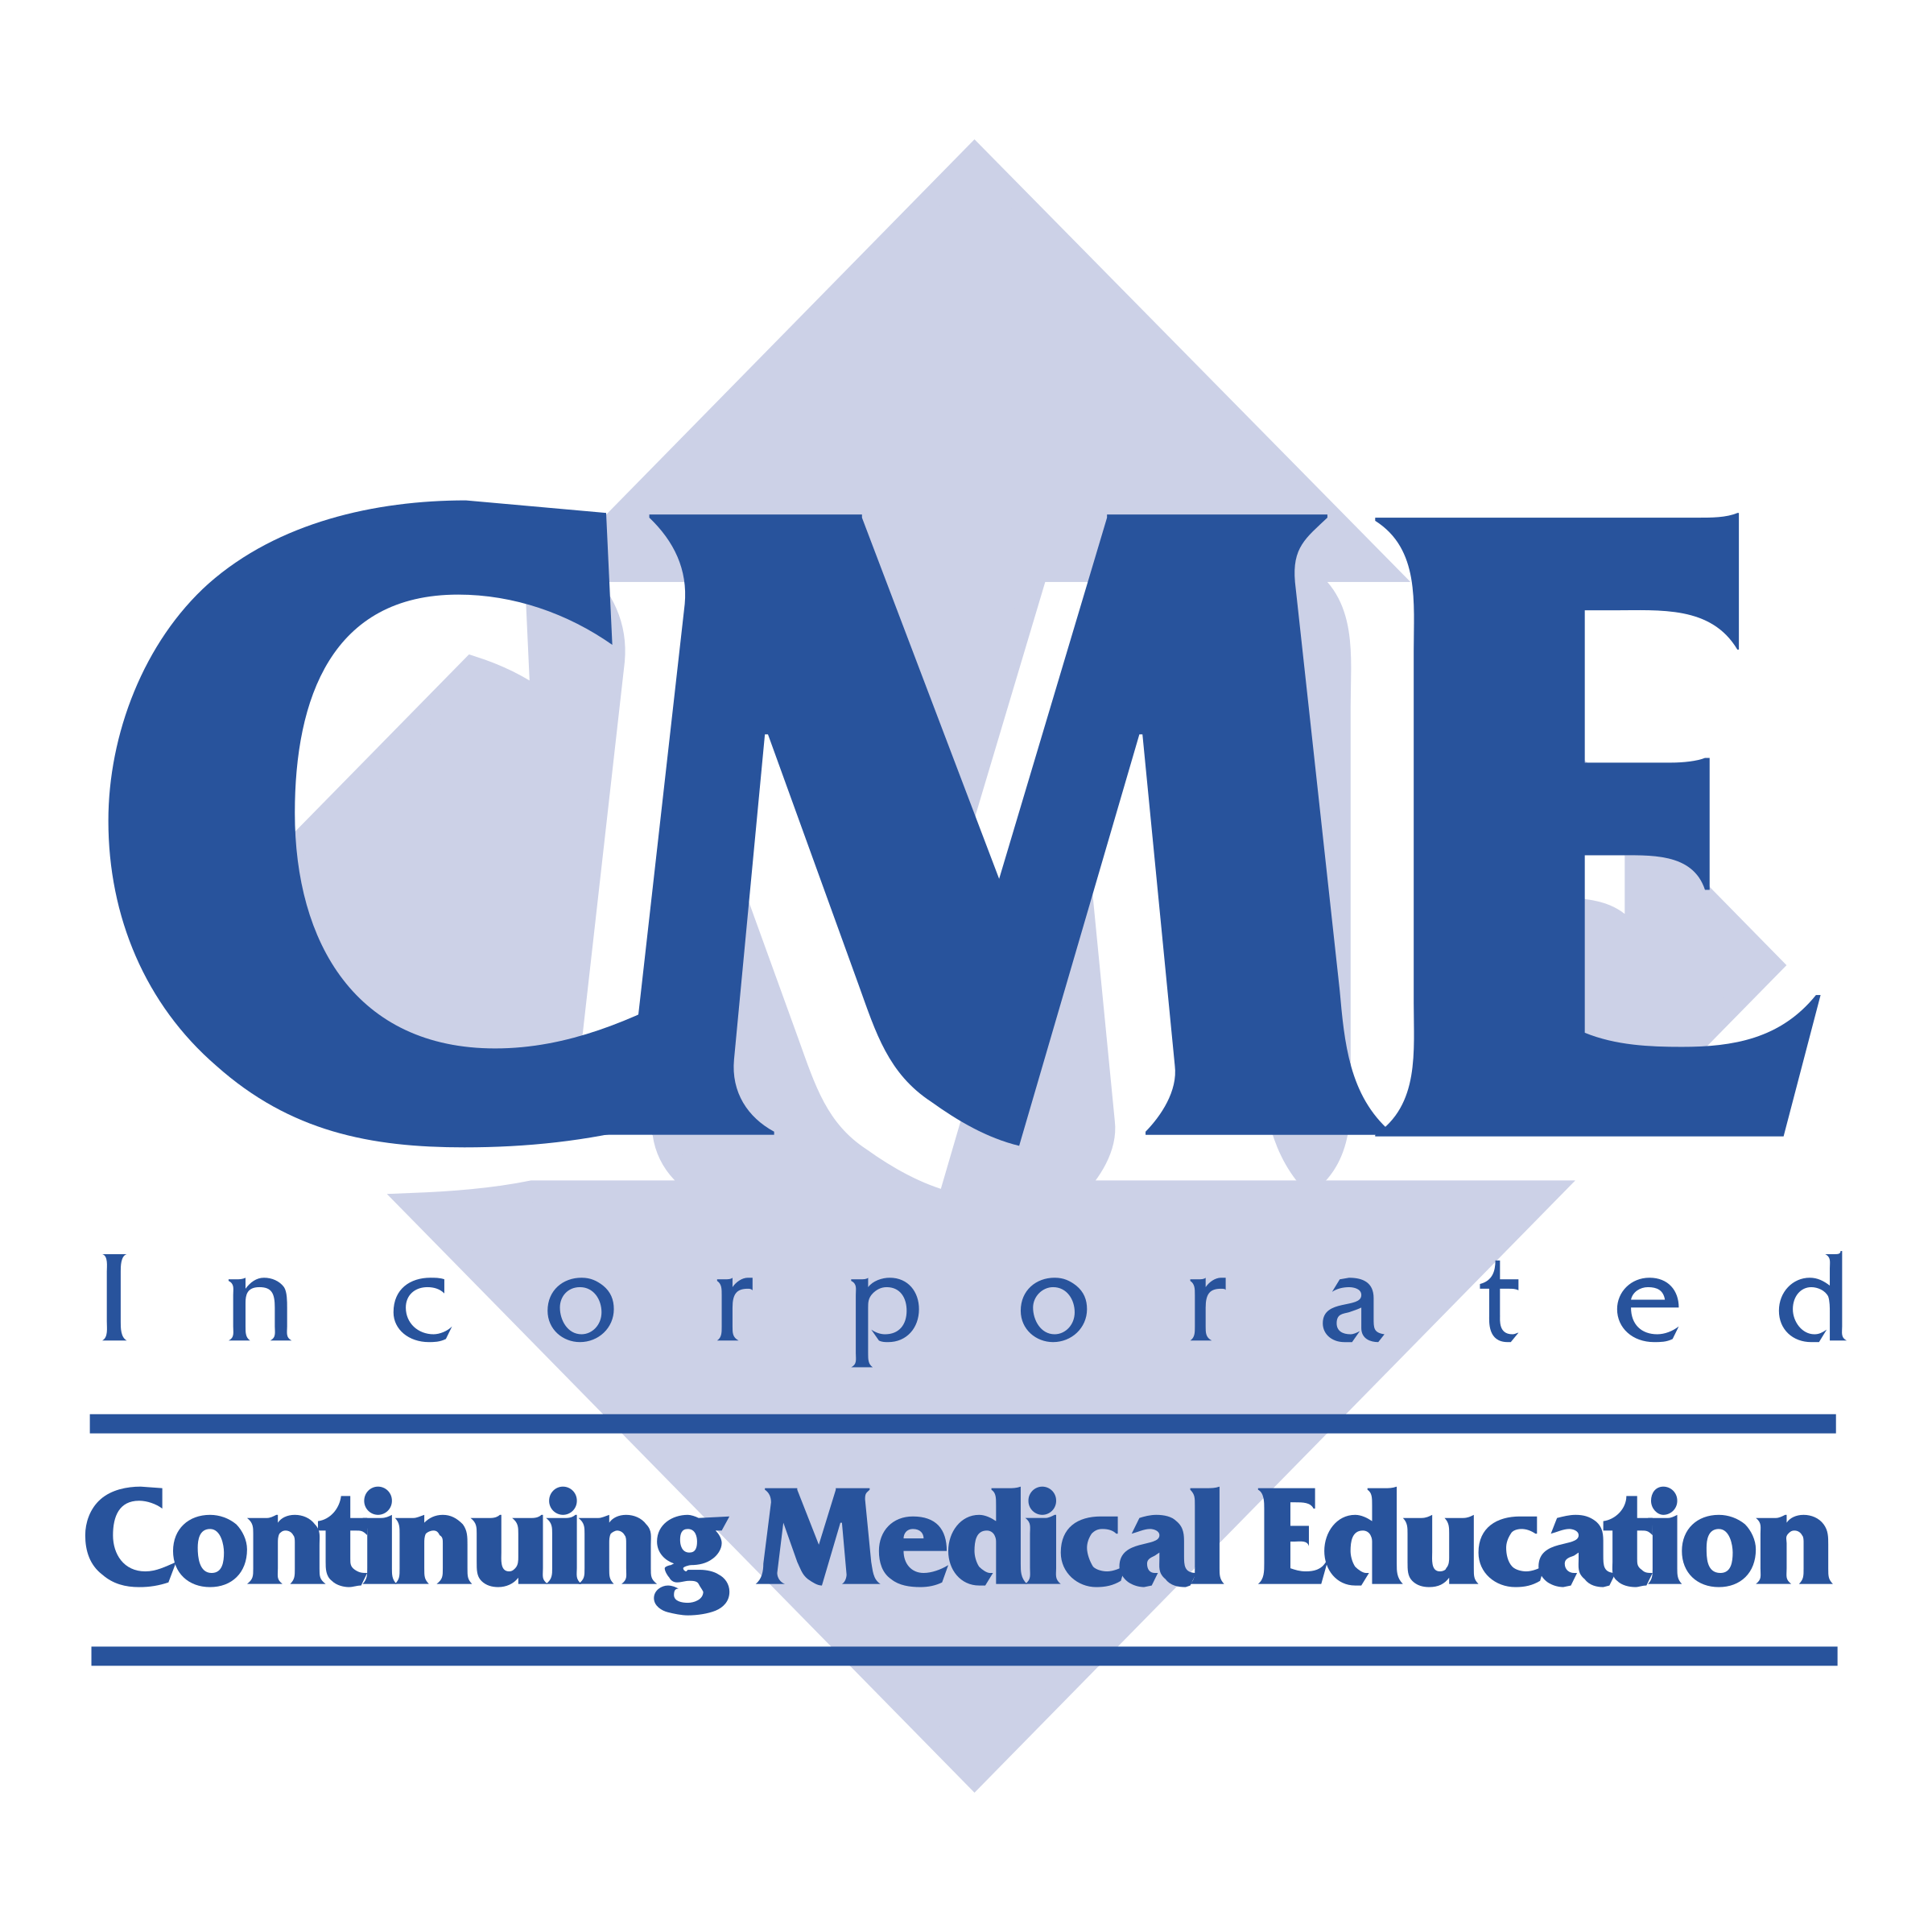 C.M.e. Logo - CME Logo PNG Transparent & SVG Vector - Freebie Supply